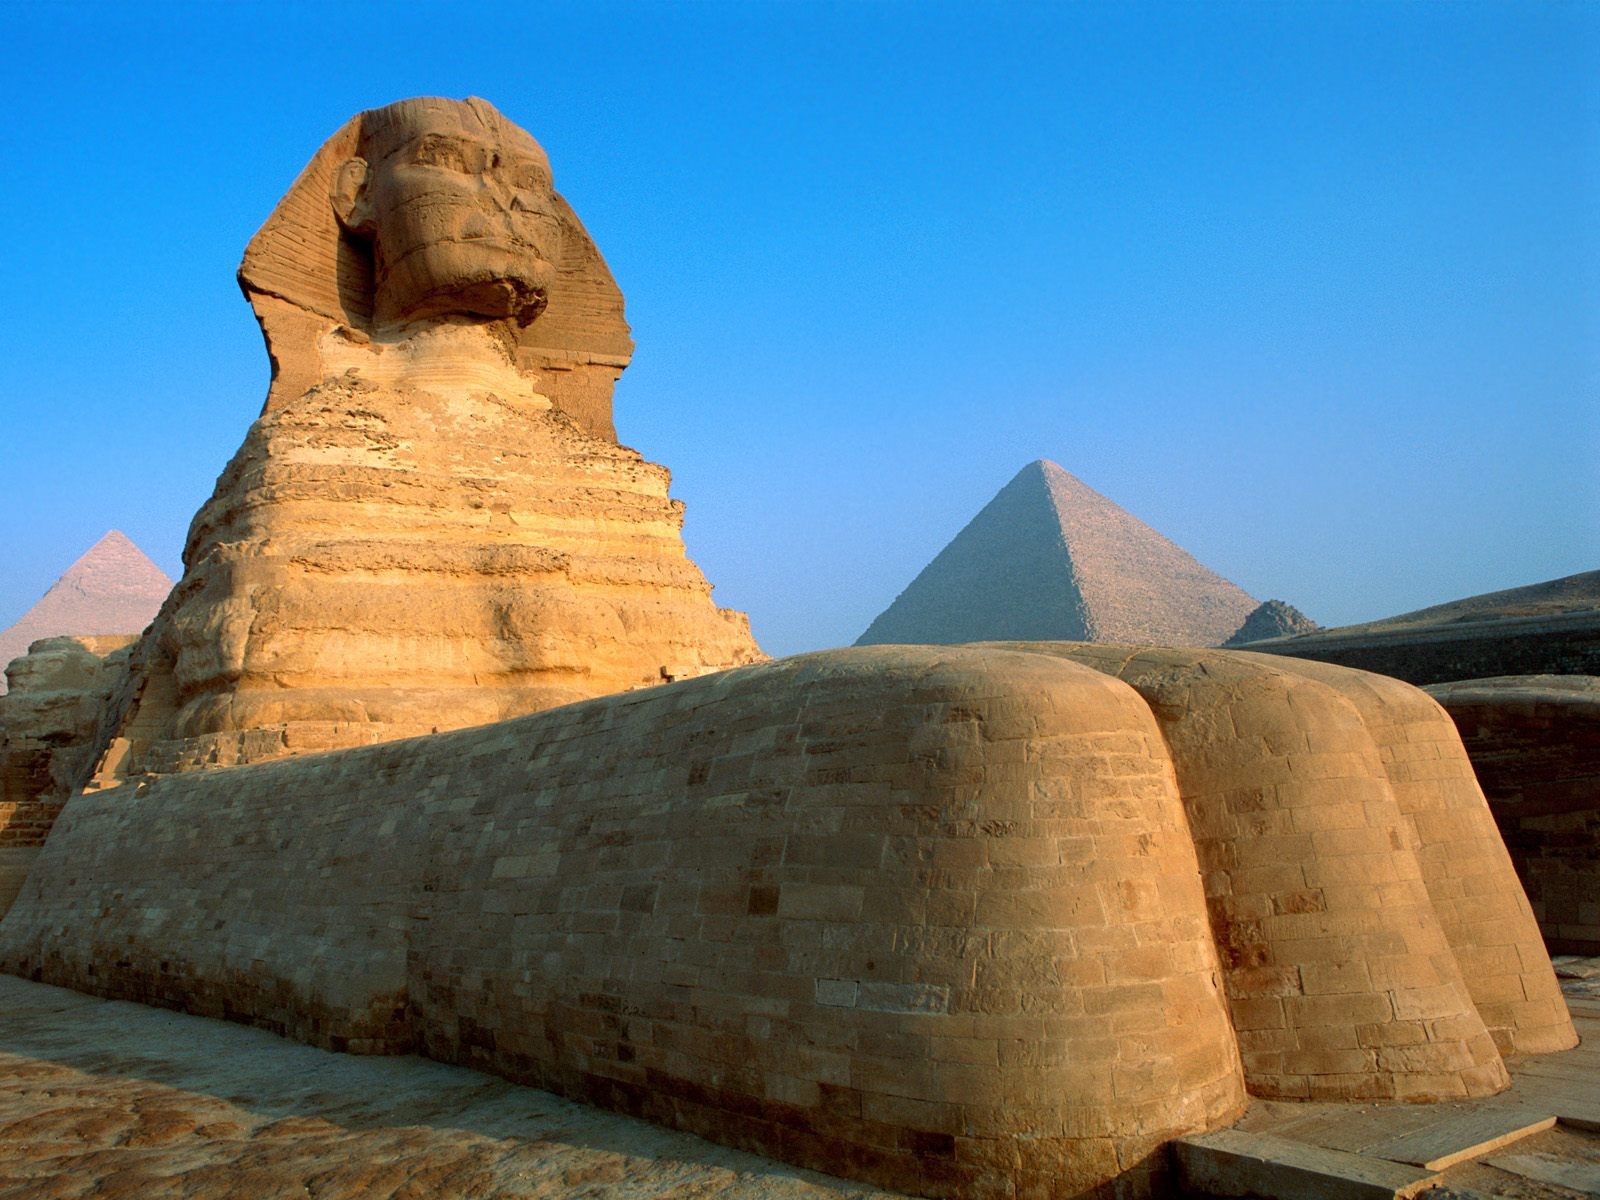 Древний египет: искусство и архитектура :: syl.ru